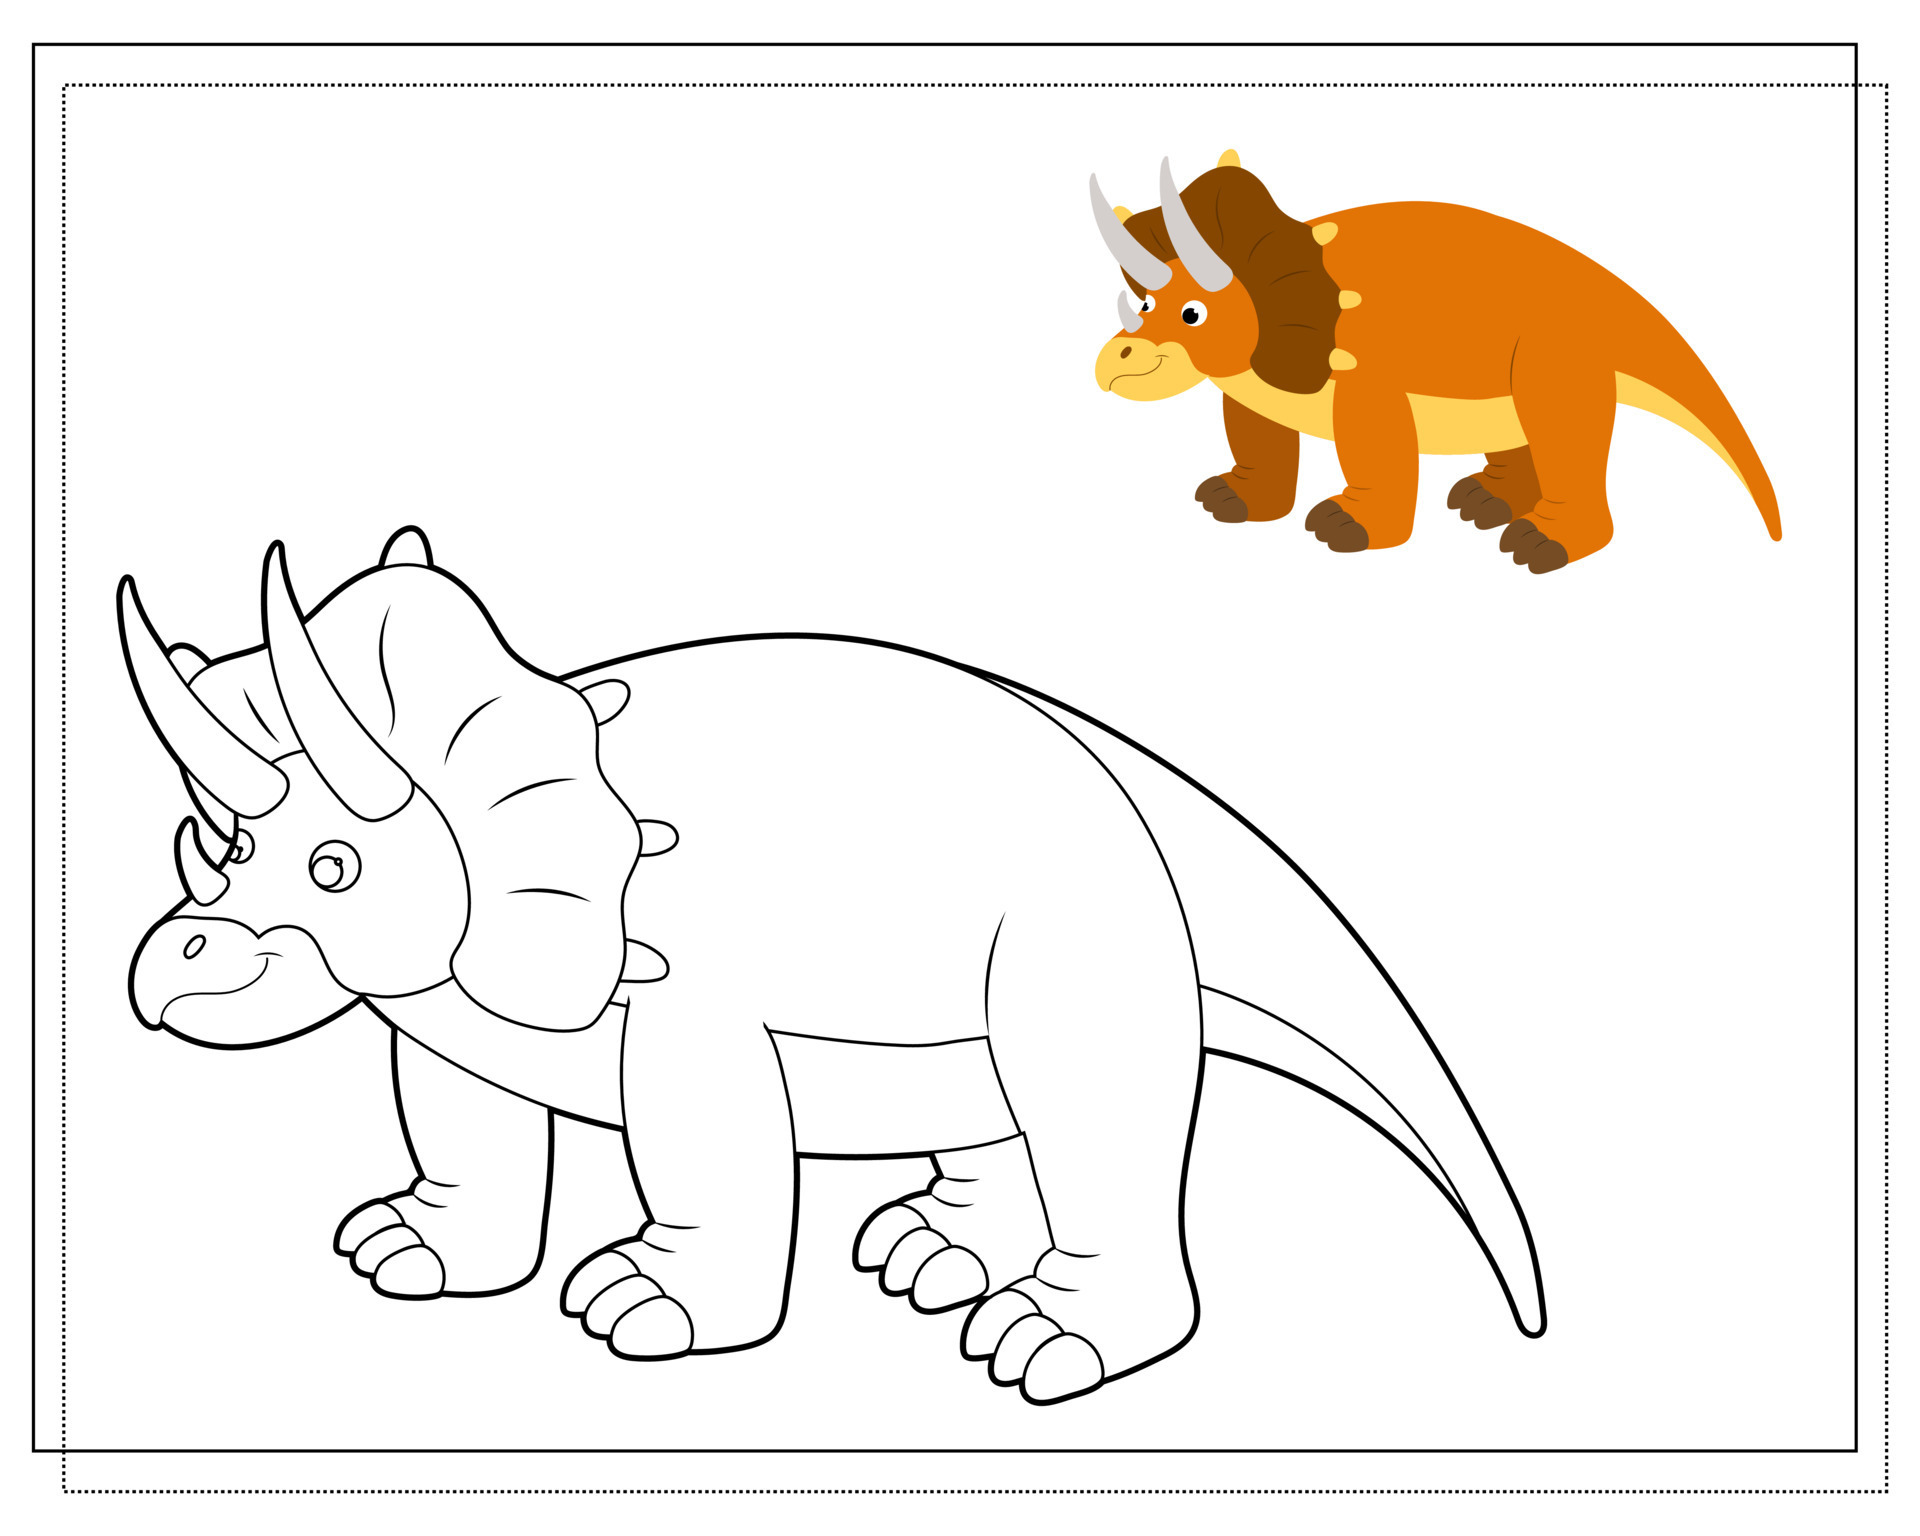 baryonyx de dinossauro robô de desenho animado, livro de colorir para  crianças, ilustração de contorno 11603411 Vetor no Vecteezy